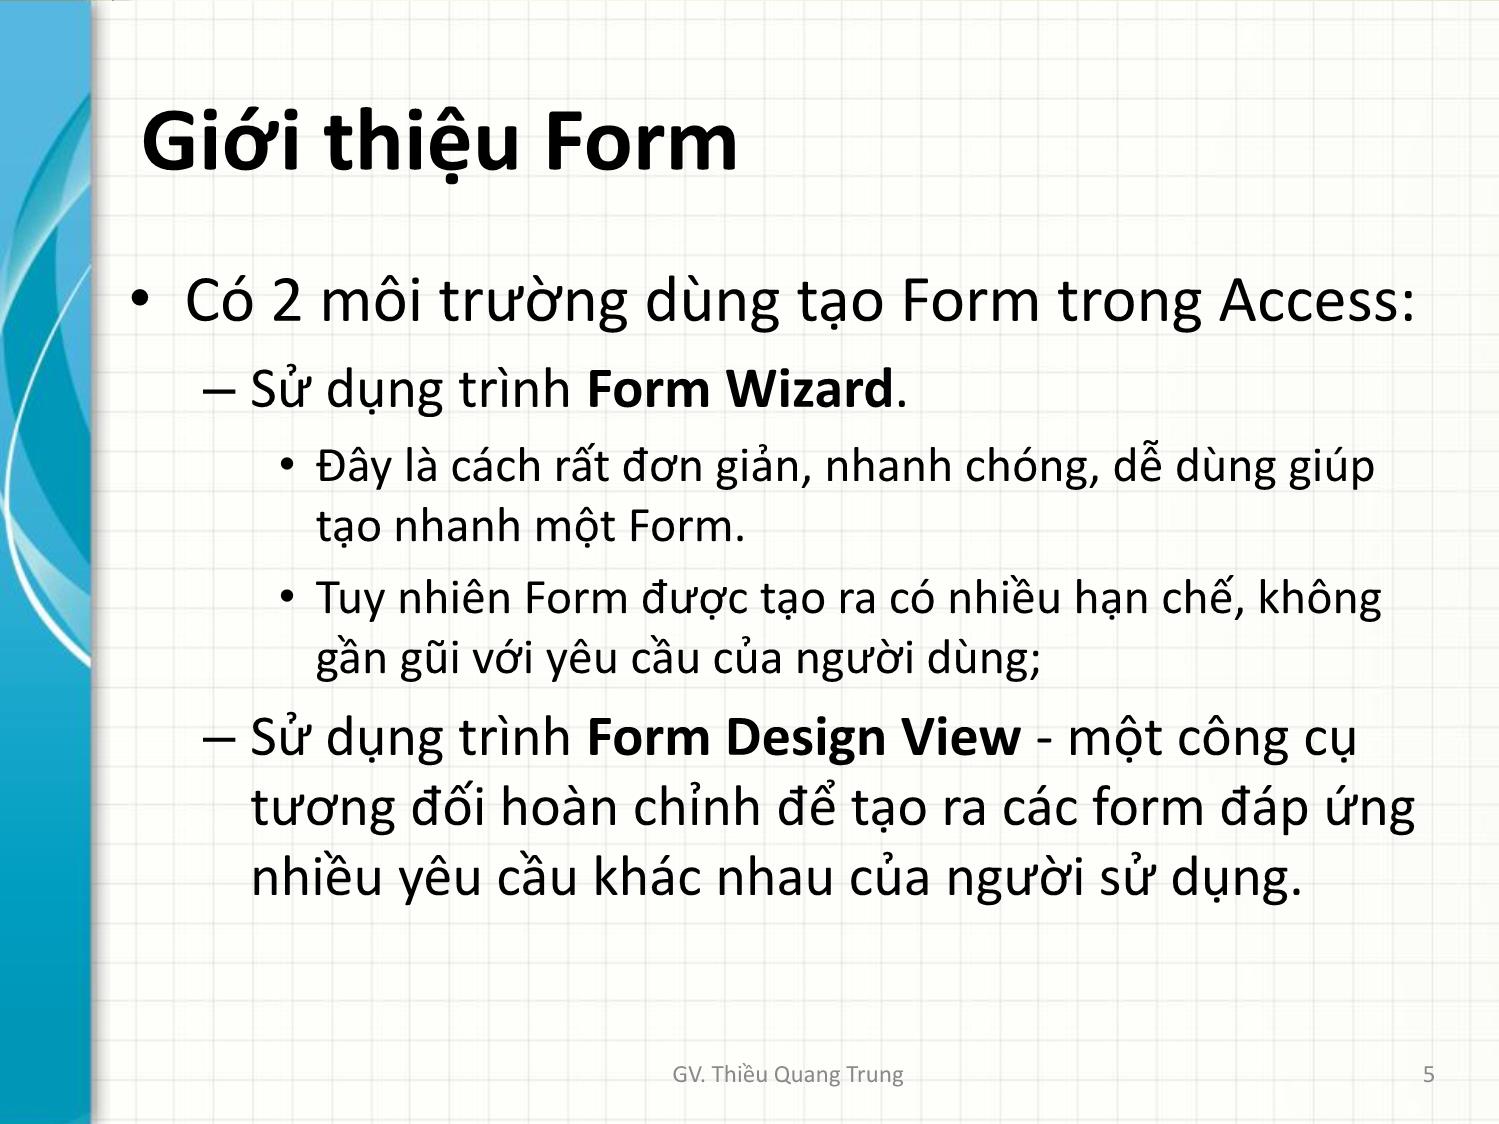 Bài giảng Tin học ứng dụng trong kinh doanh - Chương 4: Thiết kế mẫu biểu Forms - Thiều Quang Trung trang 5